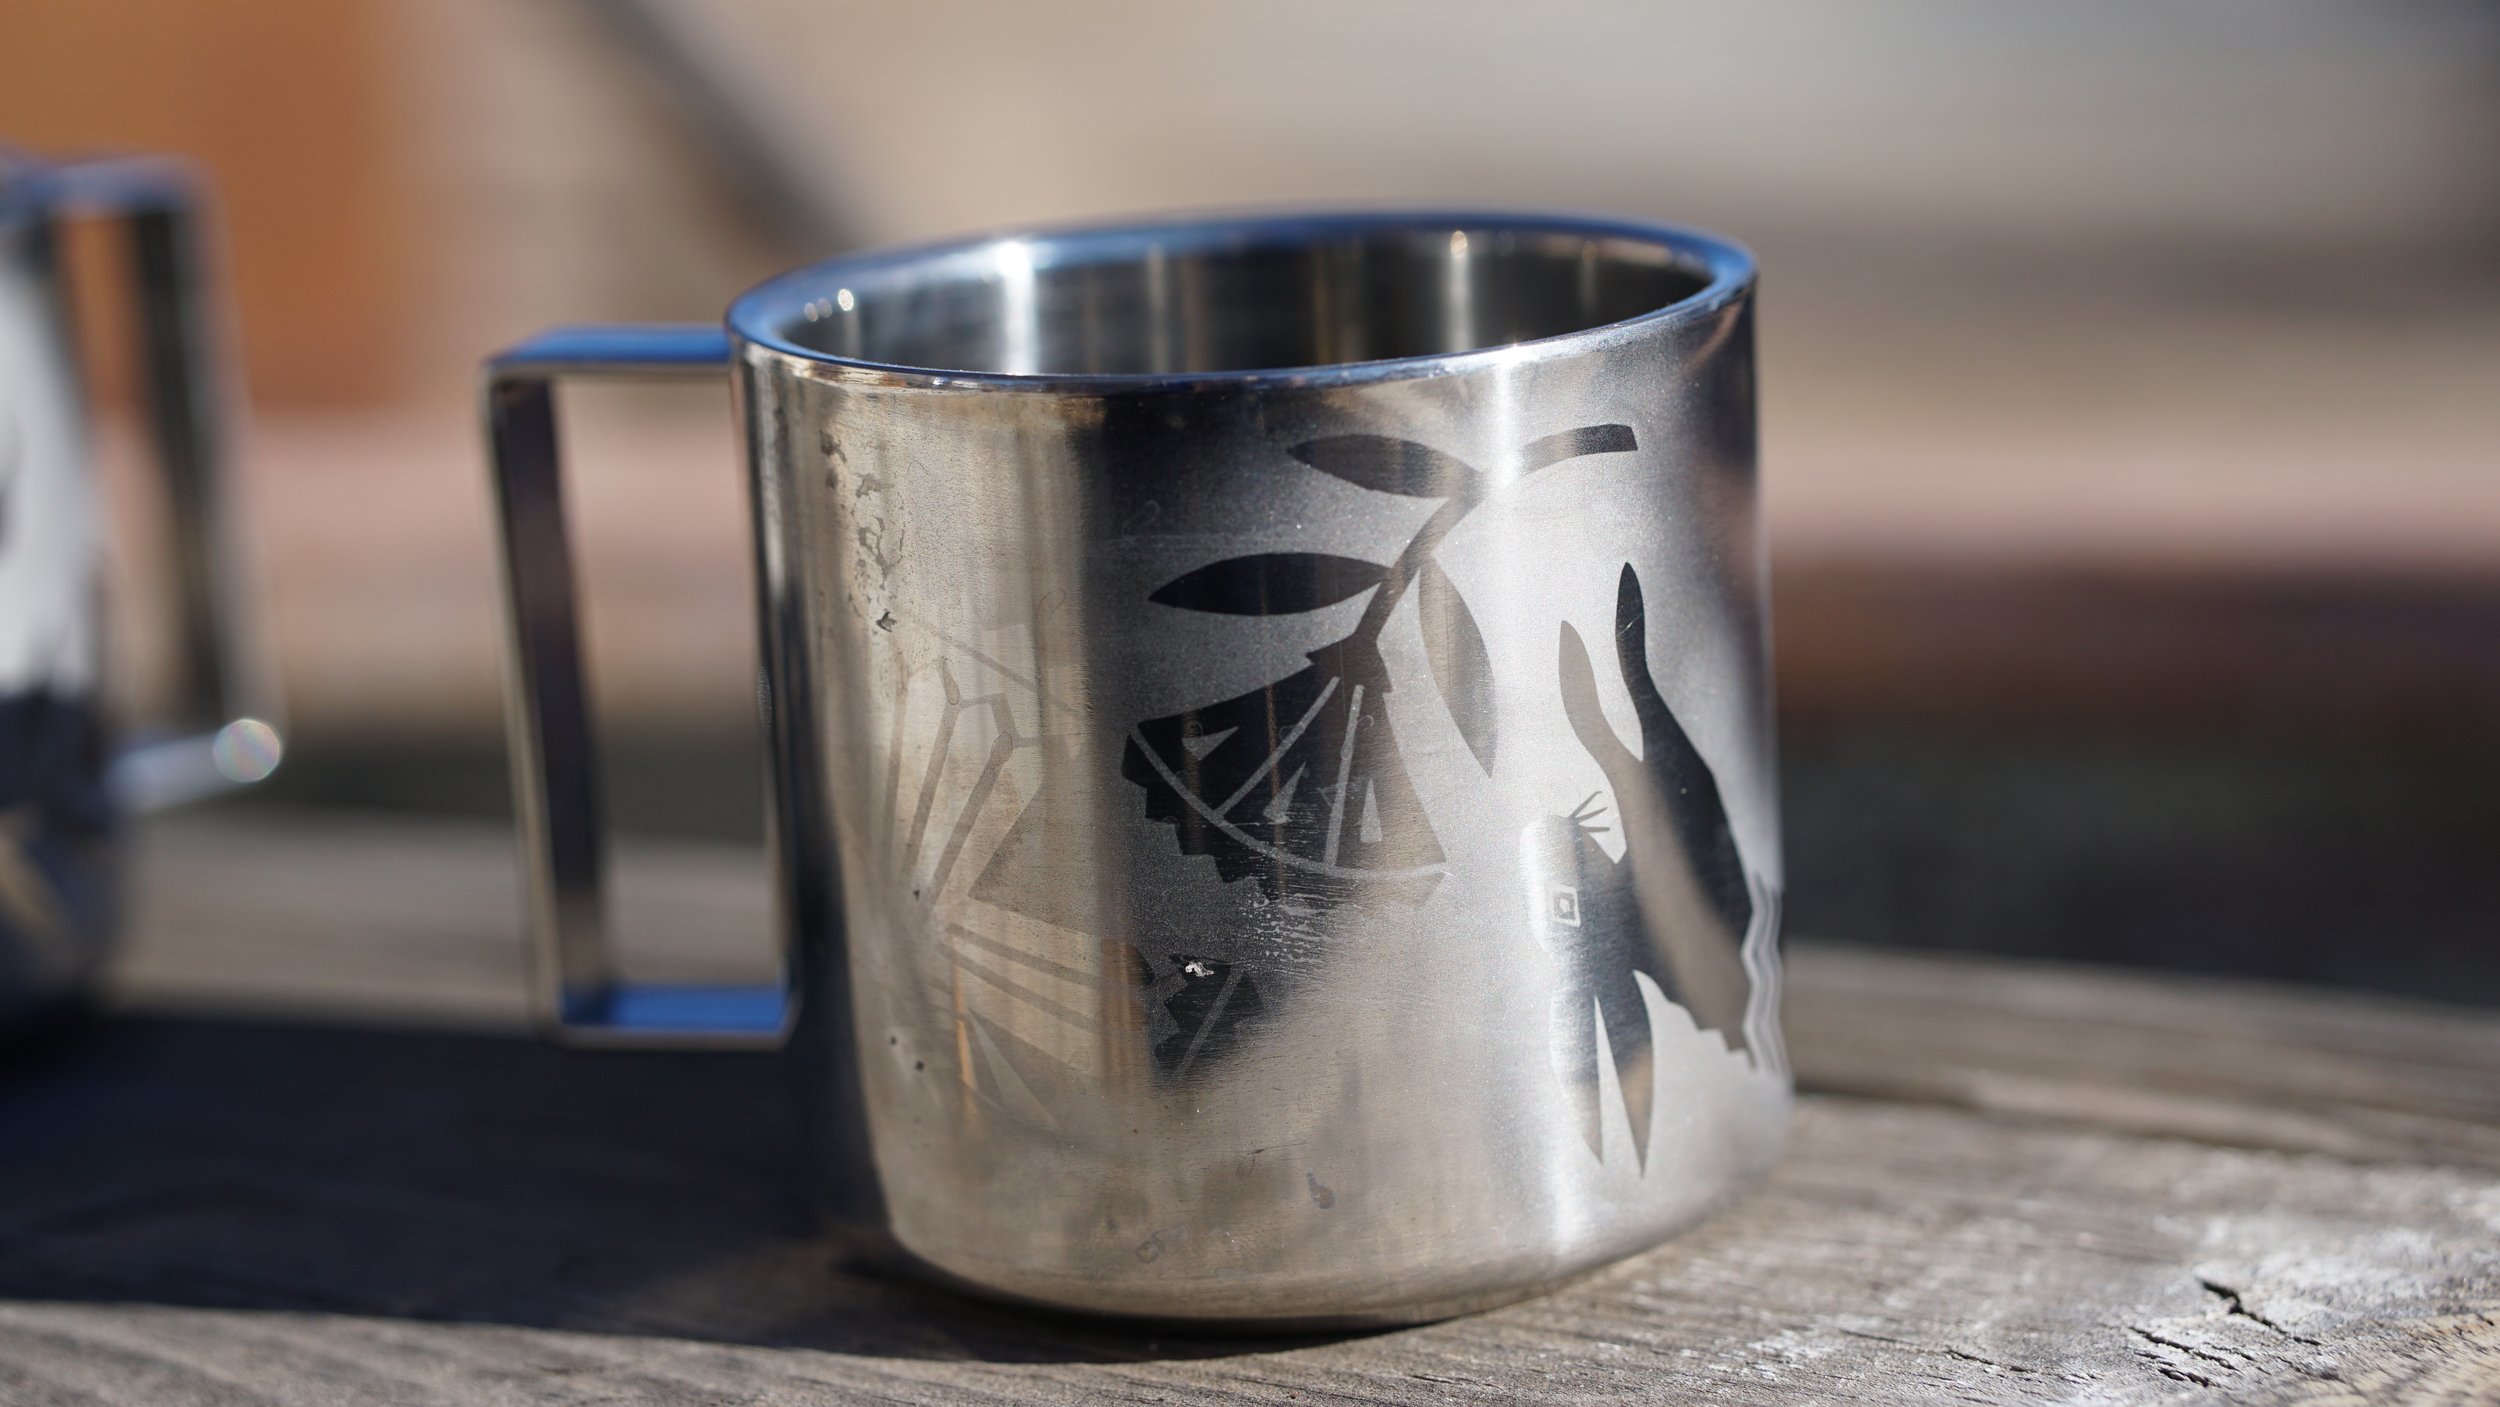 Monē stainless steel mugs for danglin — MONē